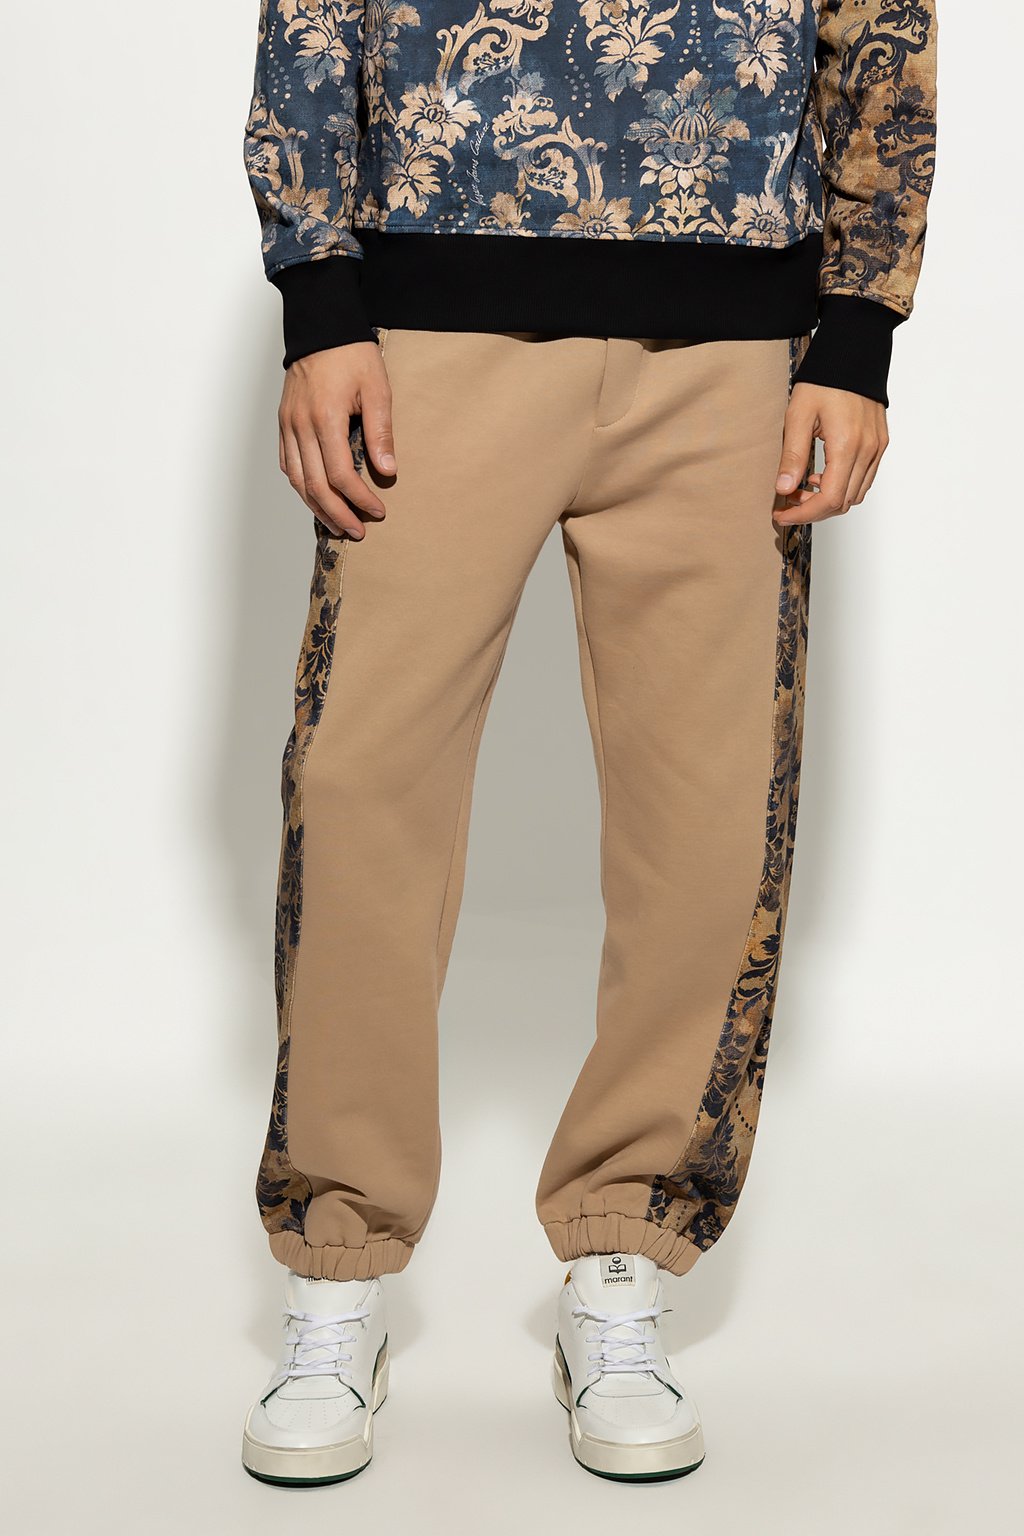 Pantalons sport/streetwear  Versace Jeans 73GAA310 FS043 710 BROWN